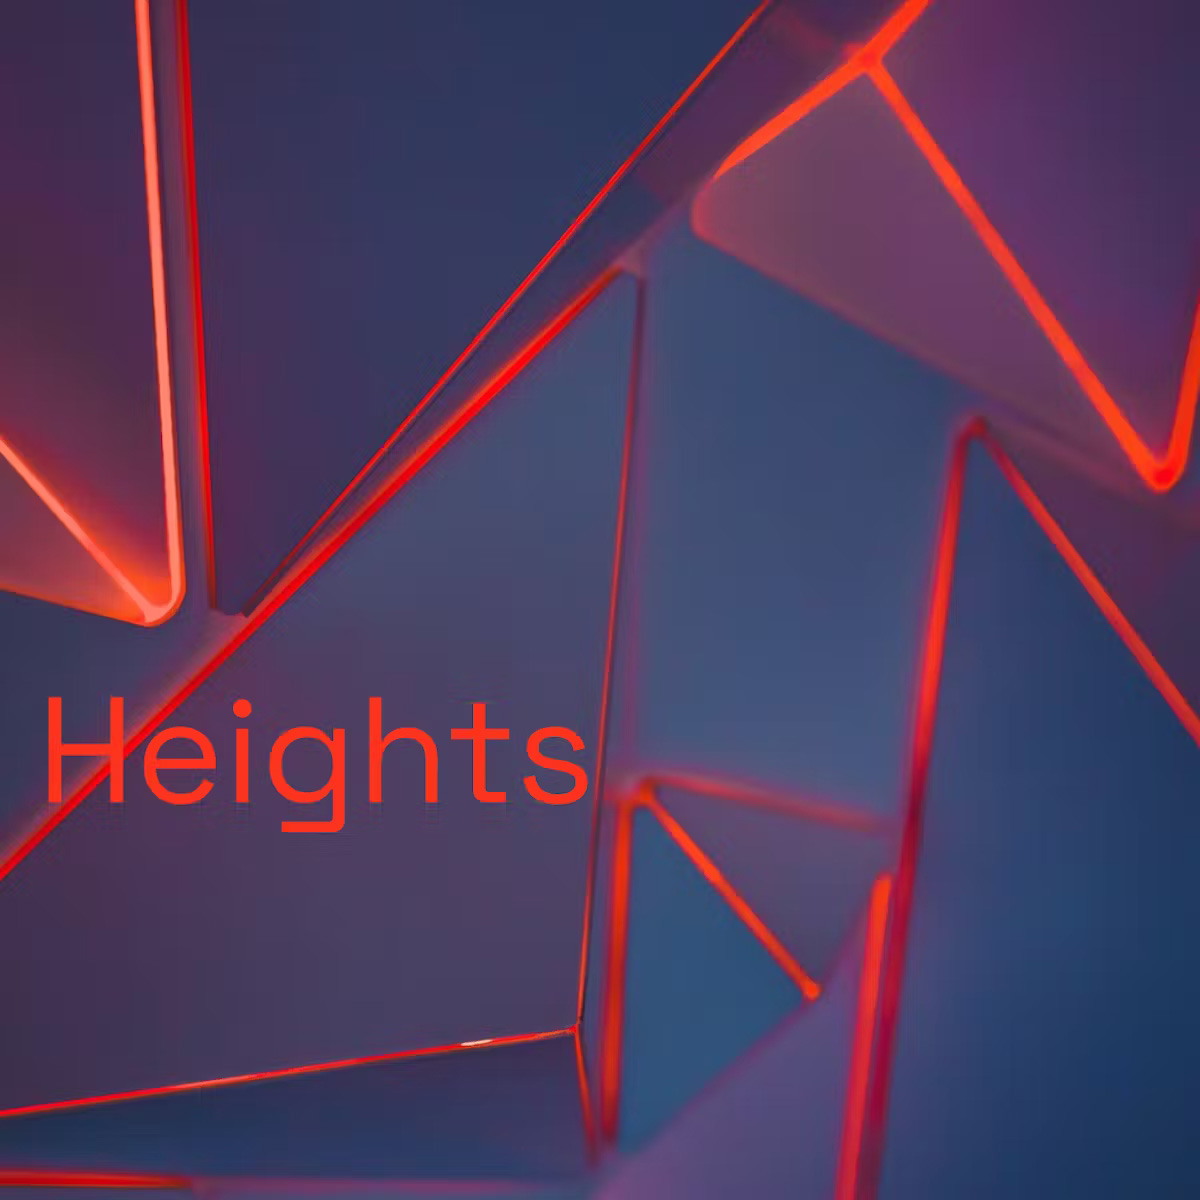 Heights es la librería gratuita de lanzamiento de Palettes -el nuevo sitio dedicado a los samples, beats y presets en Polyend